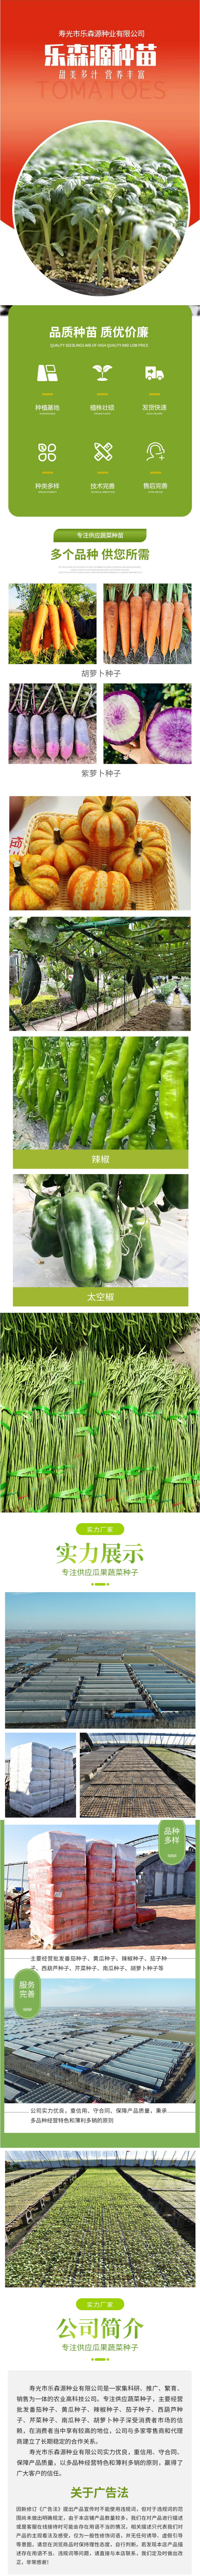 绿色长豆角-豇豆蔬菜种子-阳台种菜-青条高发芽率-乐森源种业.jpg